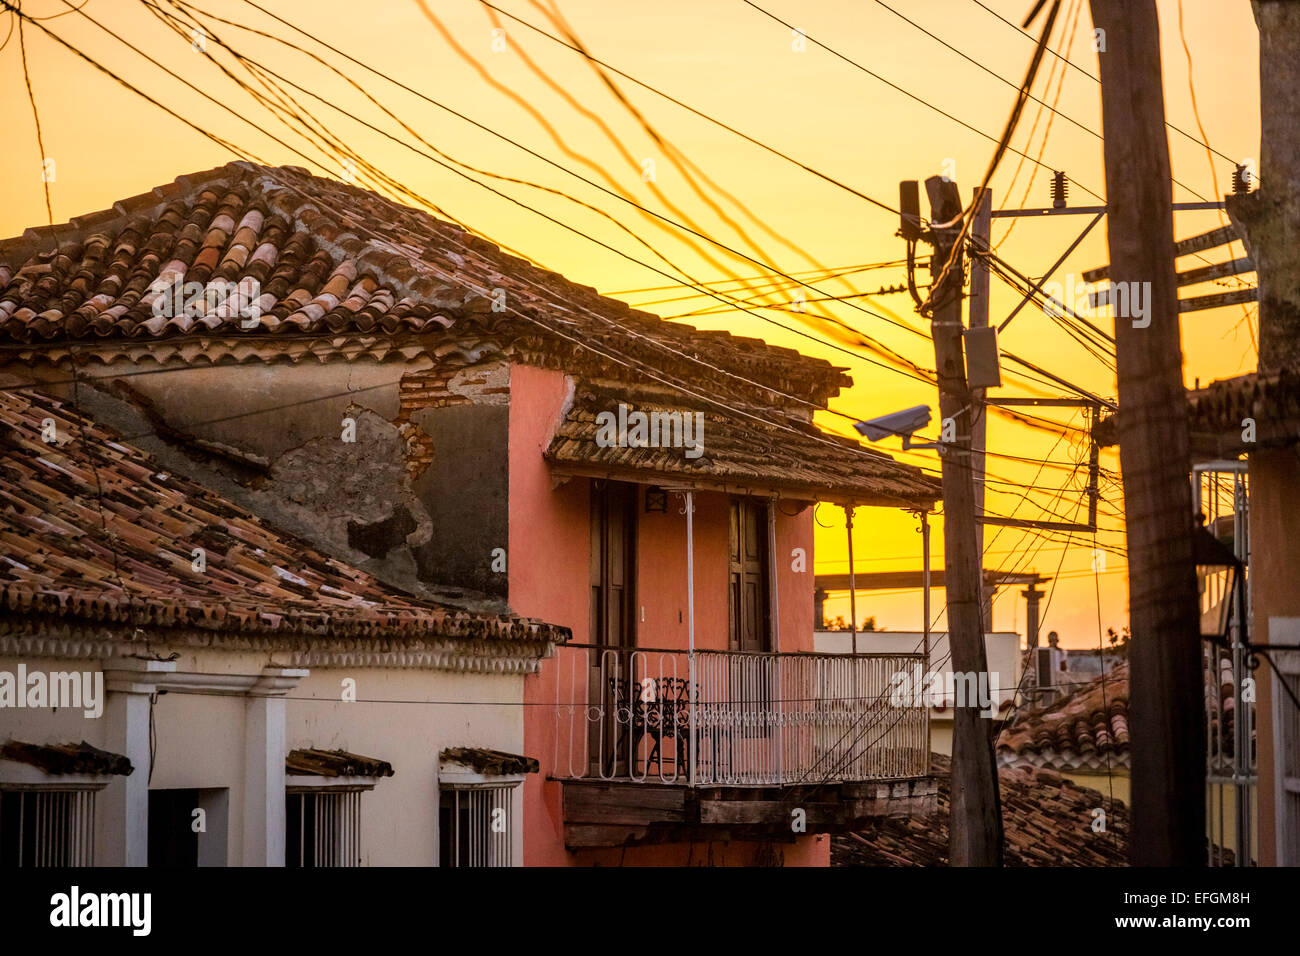 Case e le linee elettriche di alimentazione, Trinidad, Cuba Foto Stock